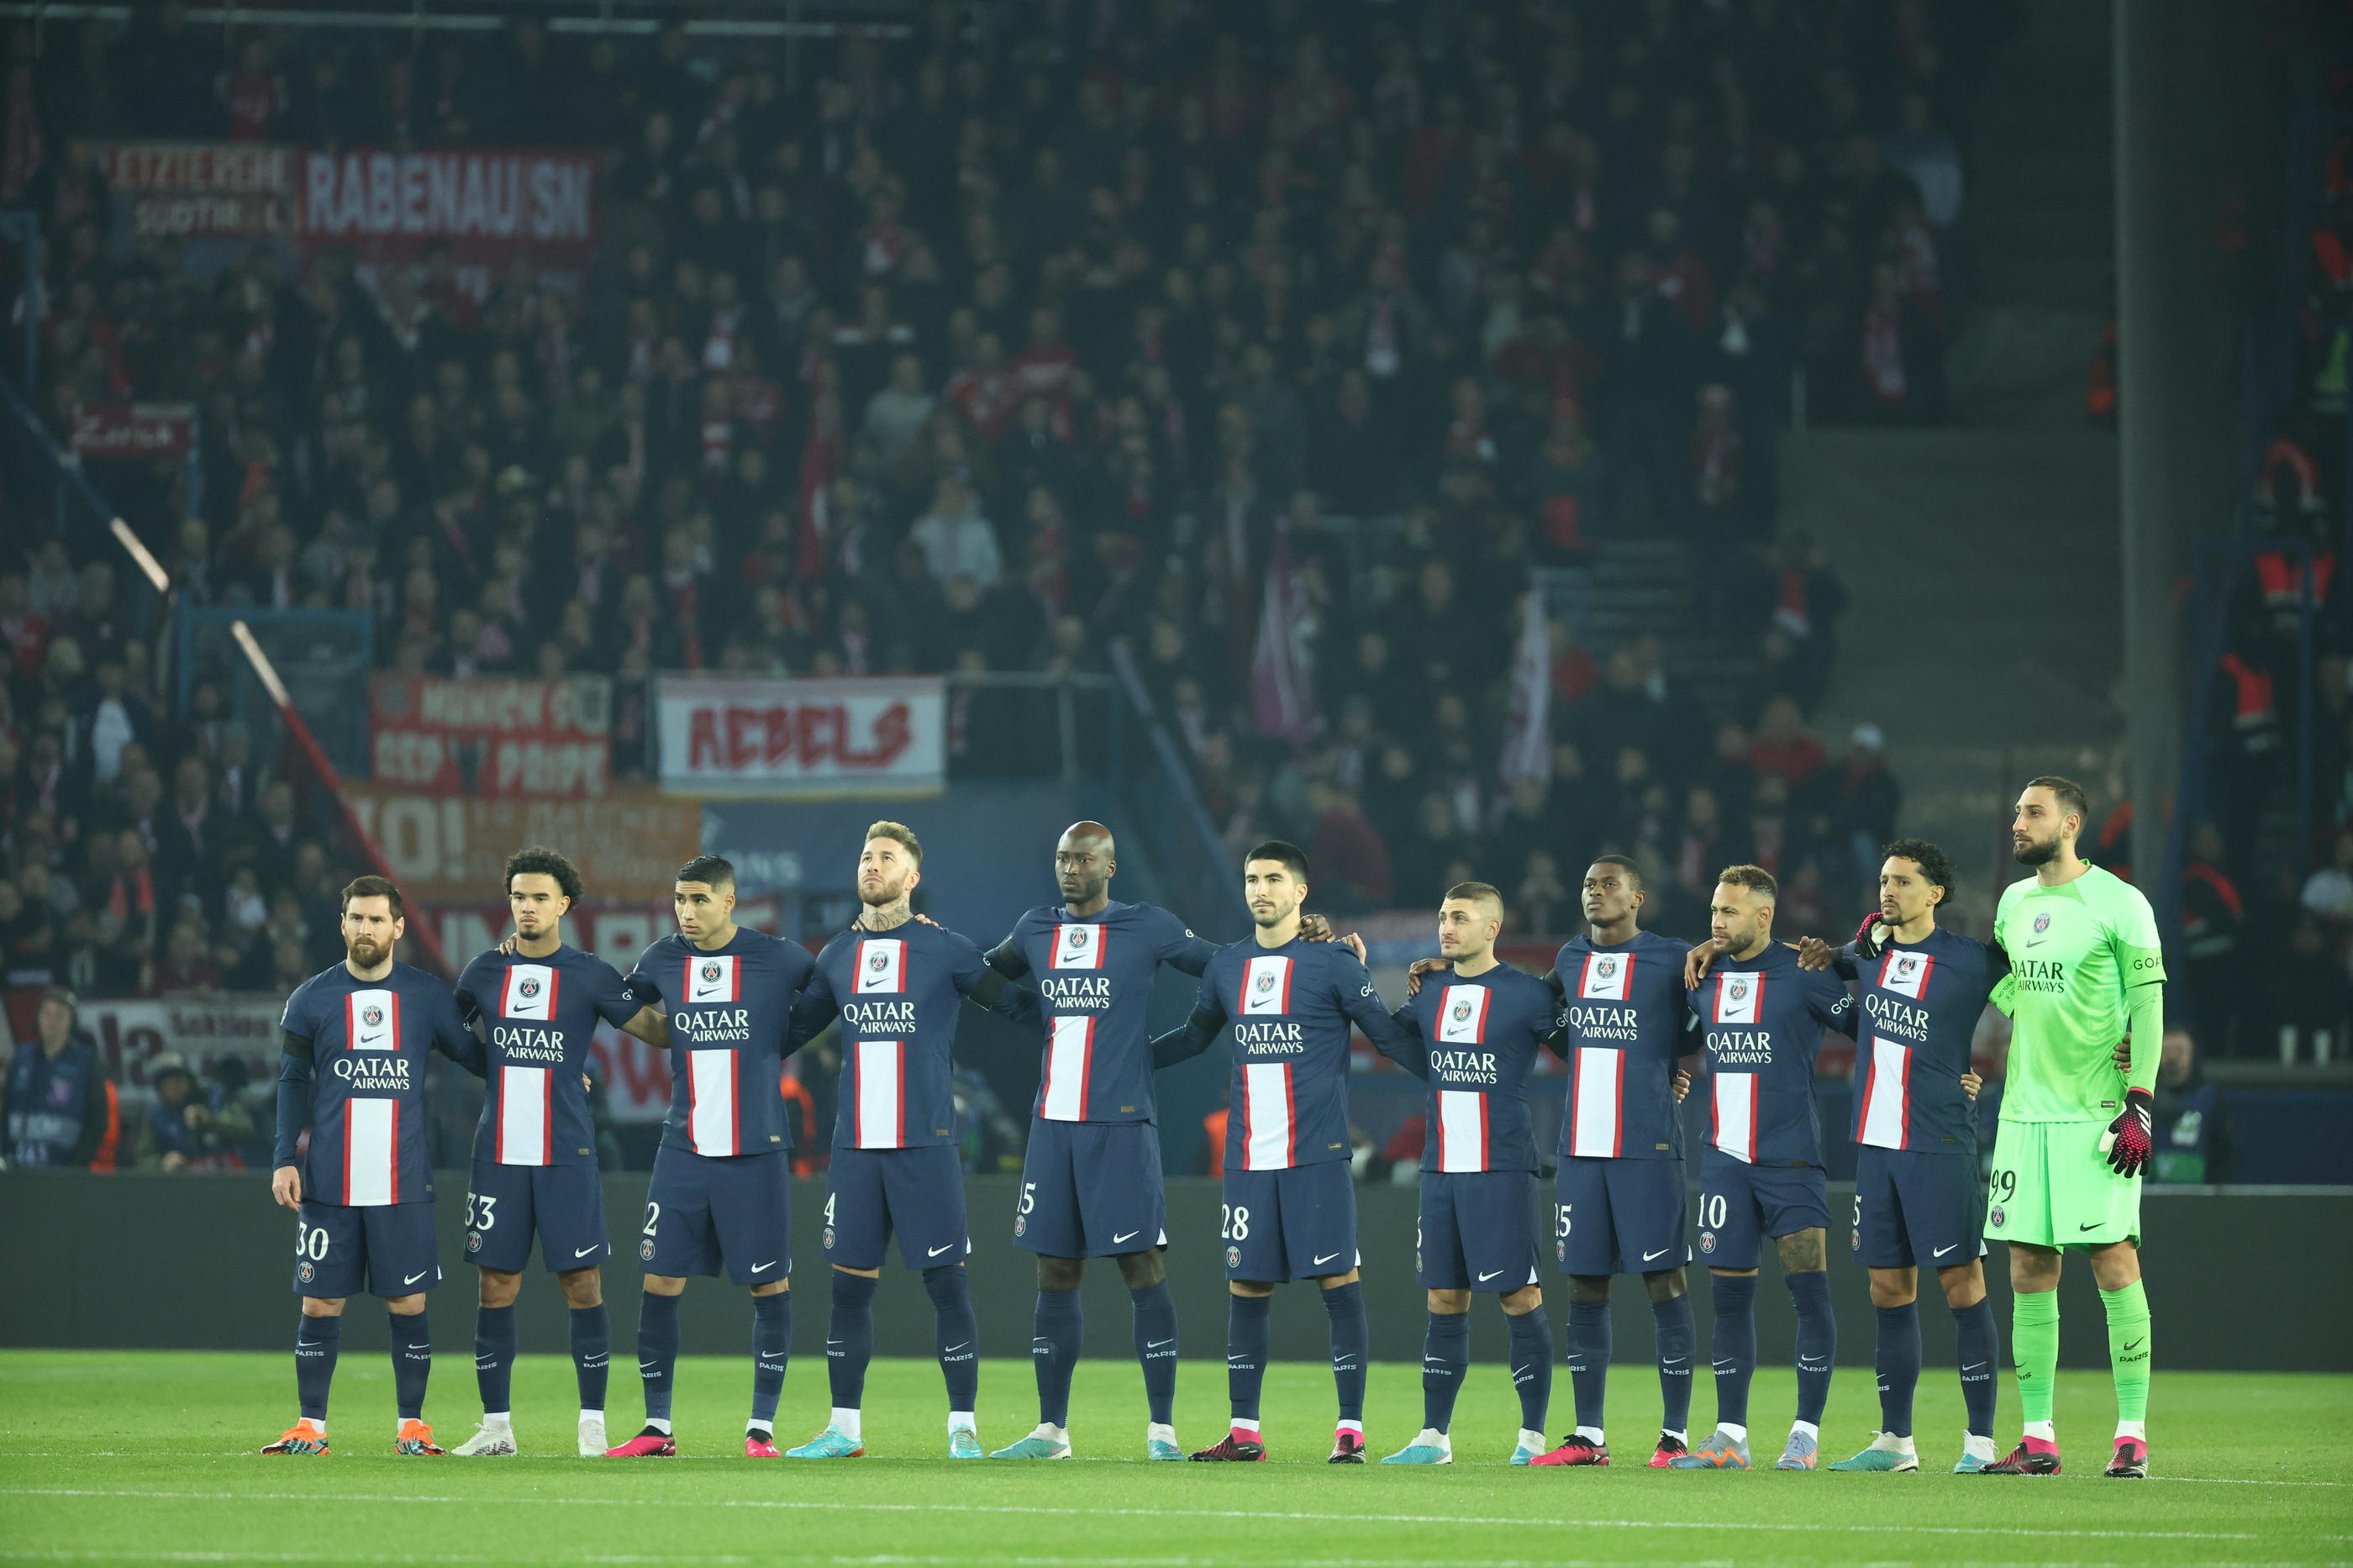 Pour Mickaël Madar, le match aller face au Bayern a montré que certains Parisiens n'avaient pas un niveau suffisant notamment pour permettre à Messi et Neymar de briller. LP/Arnaud Journois